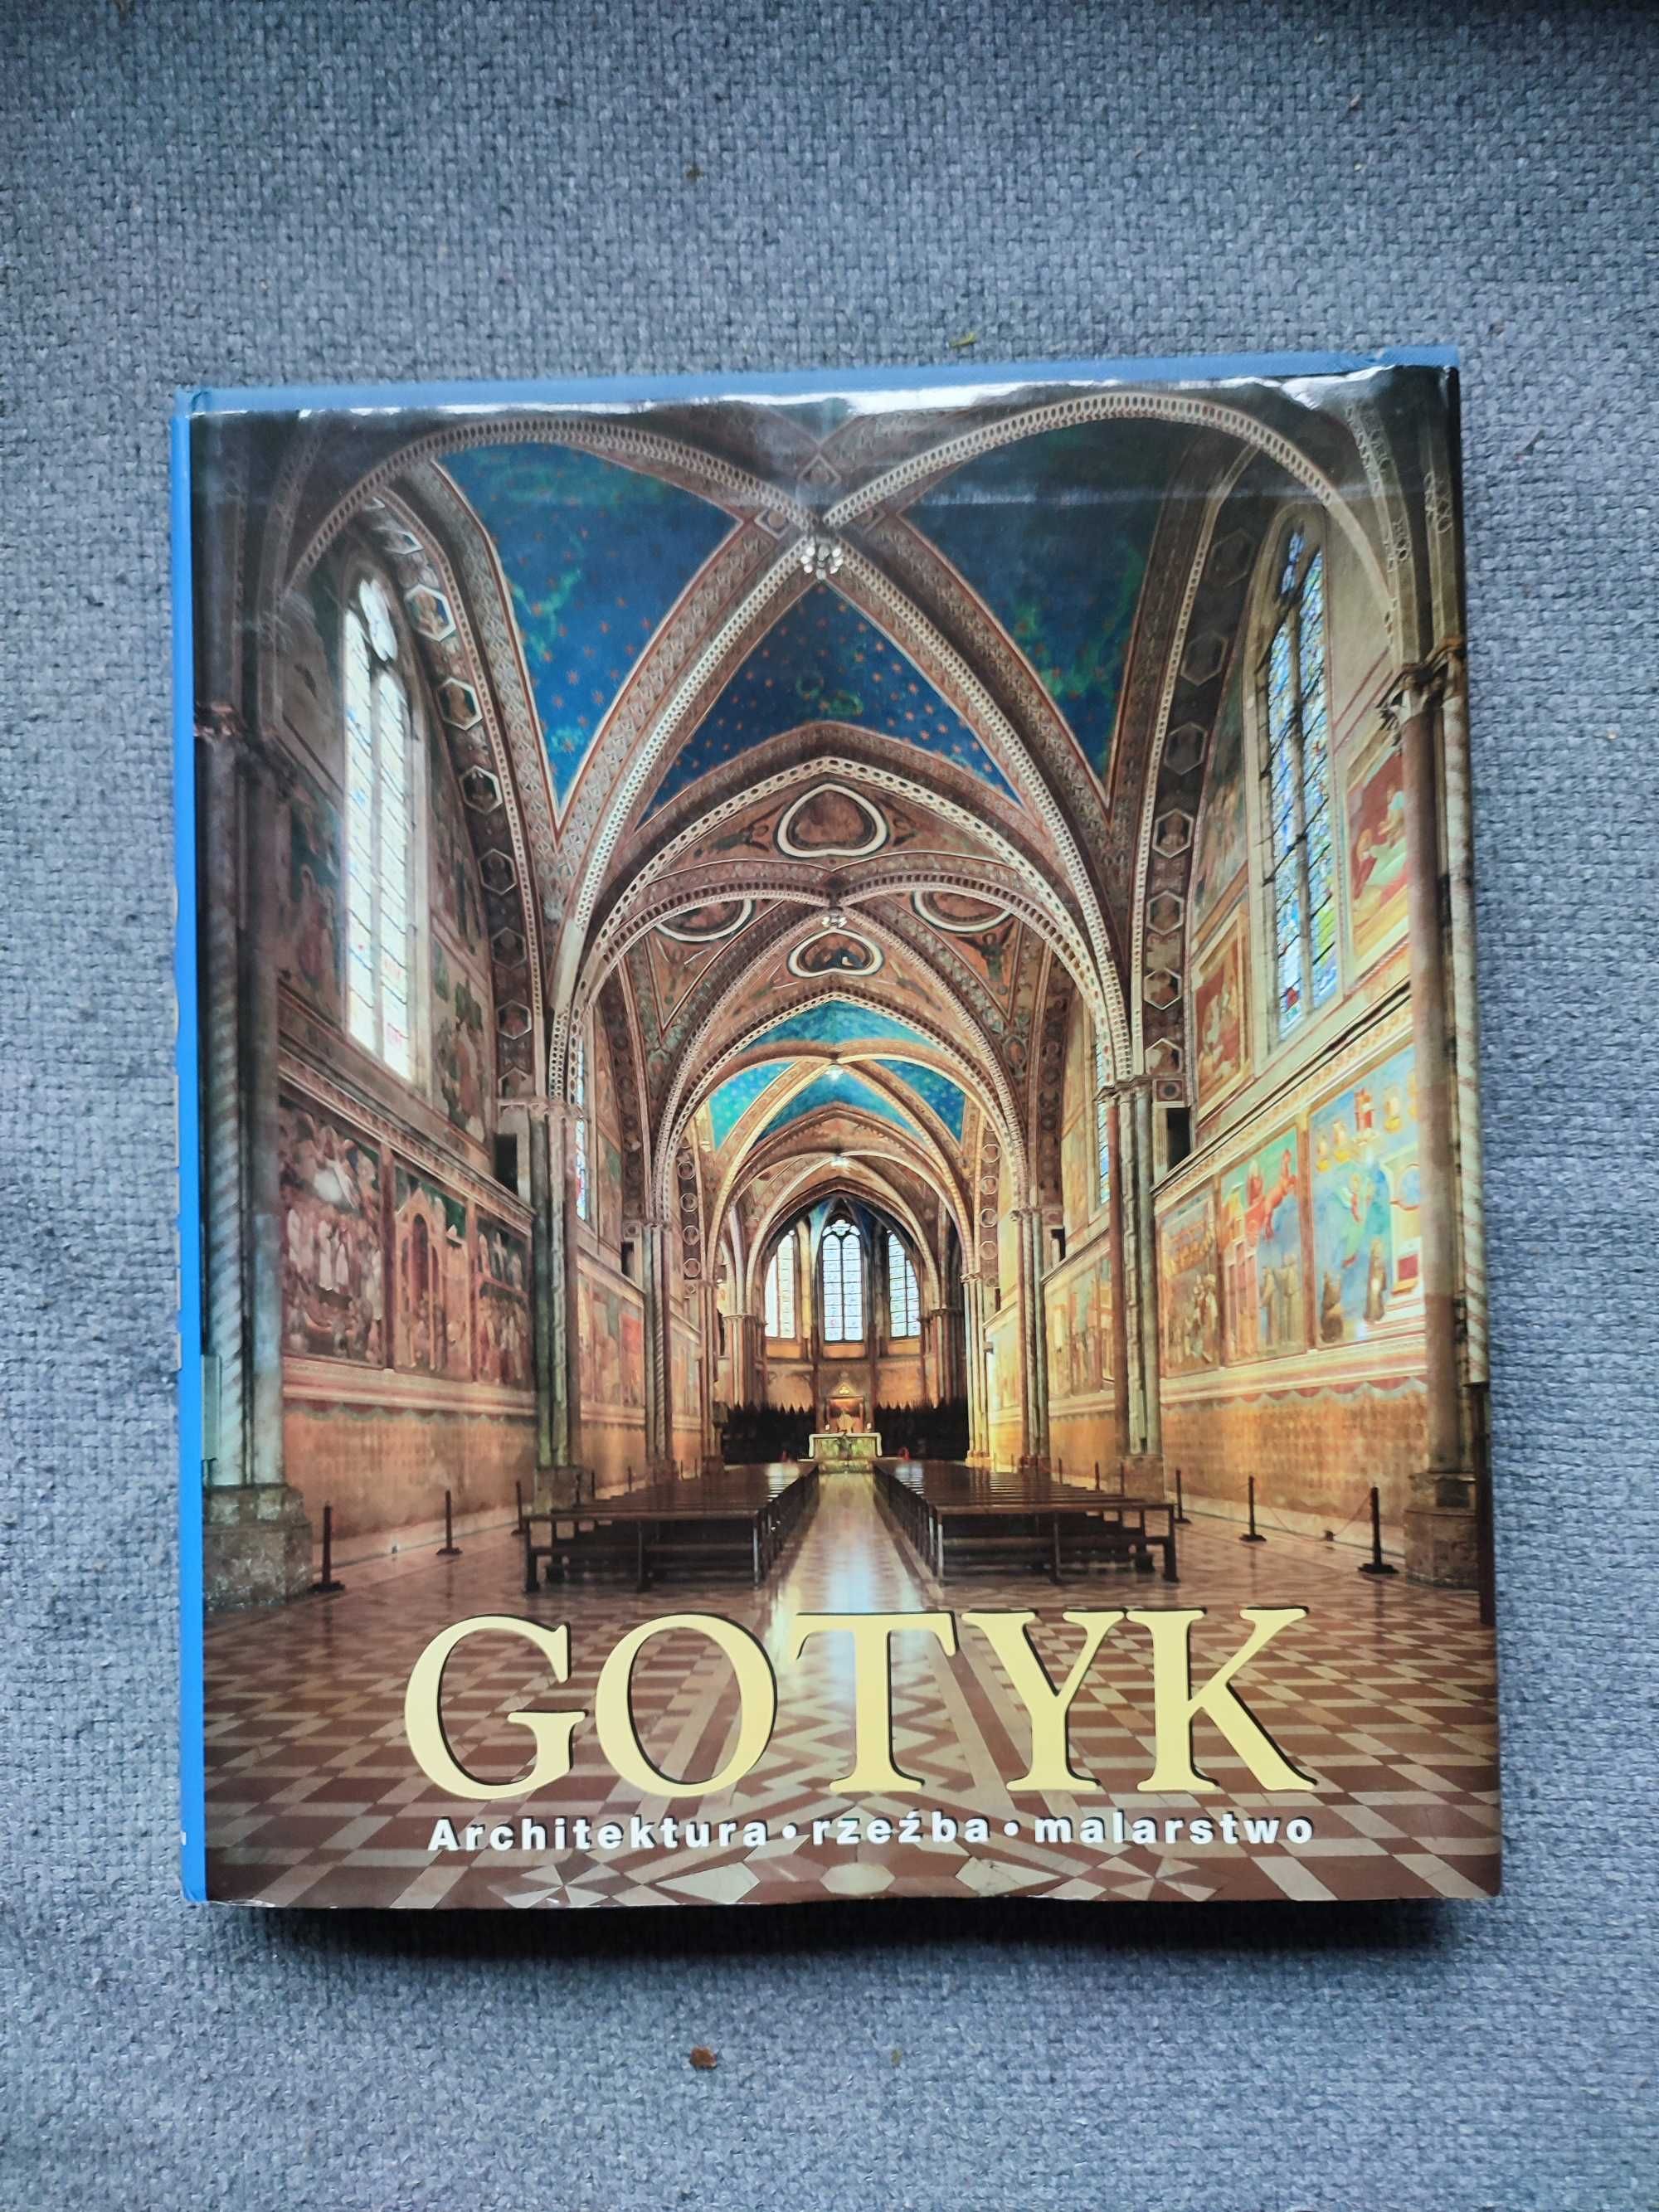 Sprzedaż książki "Gotyk. Architektura, rzeźba, malarstwo"